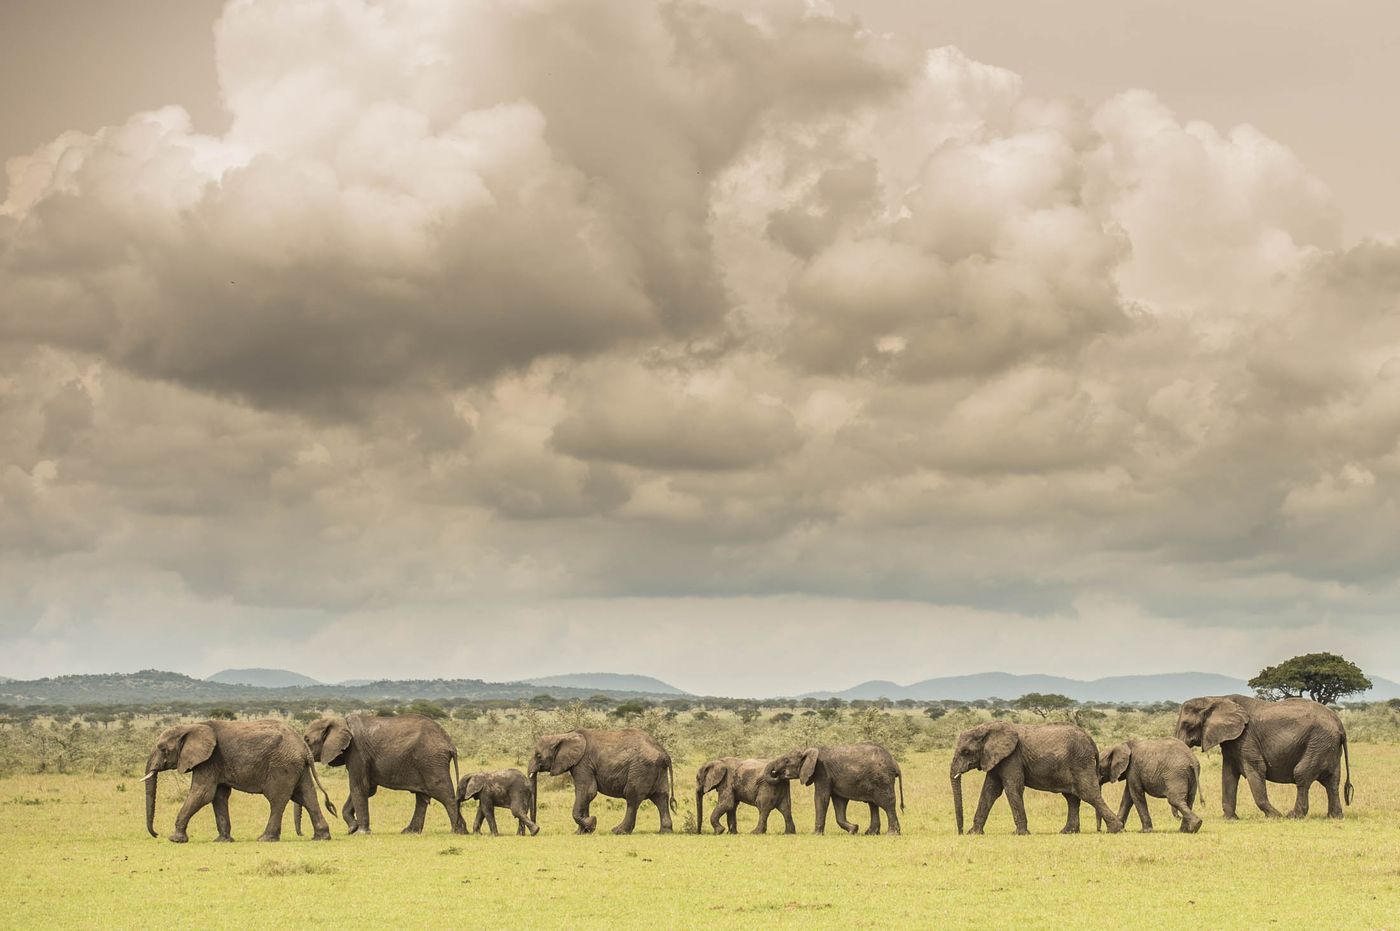 微软联合创始人保罗·艾伦开发的监控系统，让大象偷猎者无处可逃 |发现